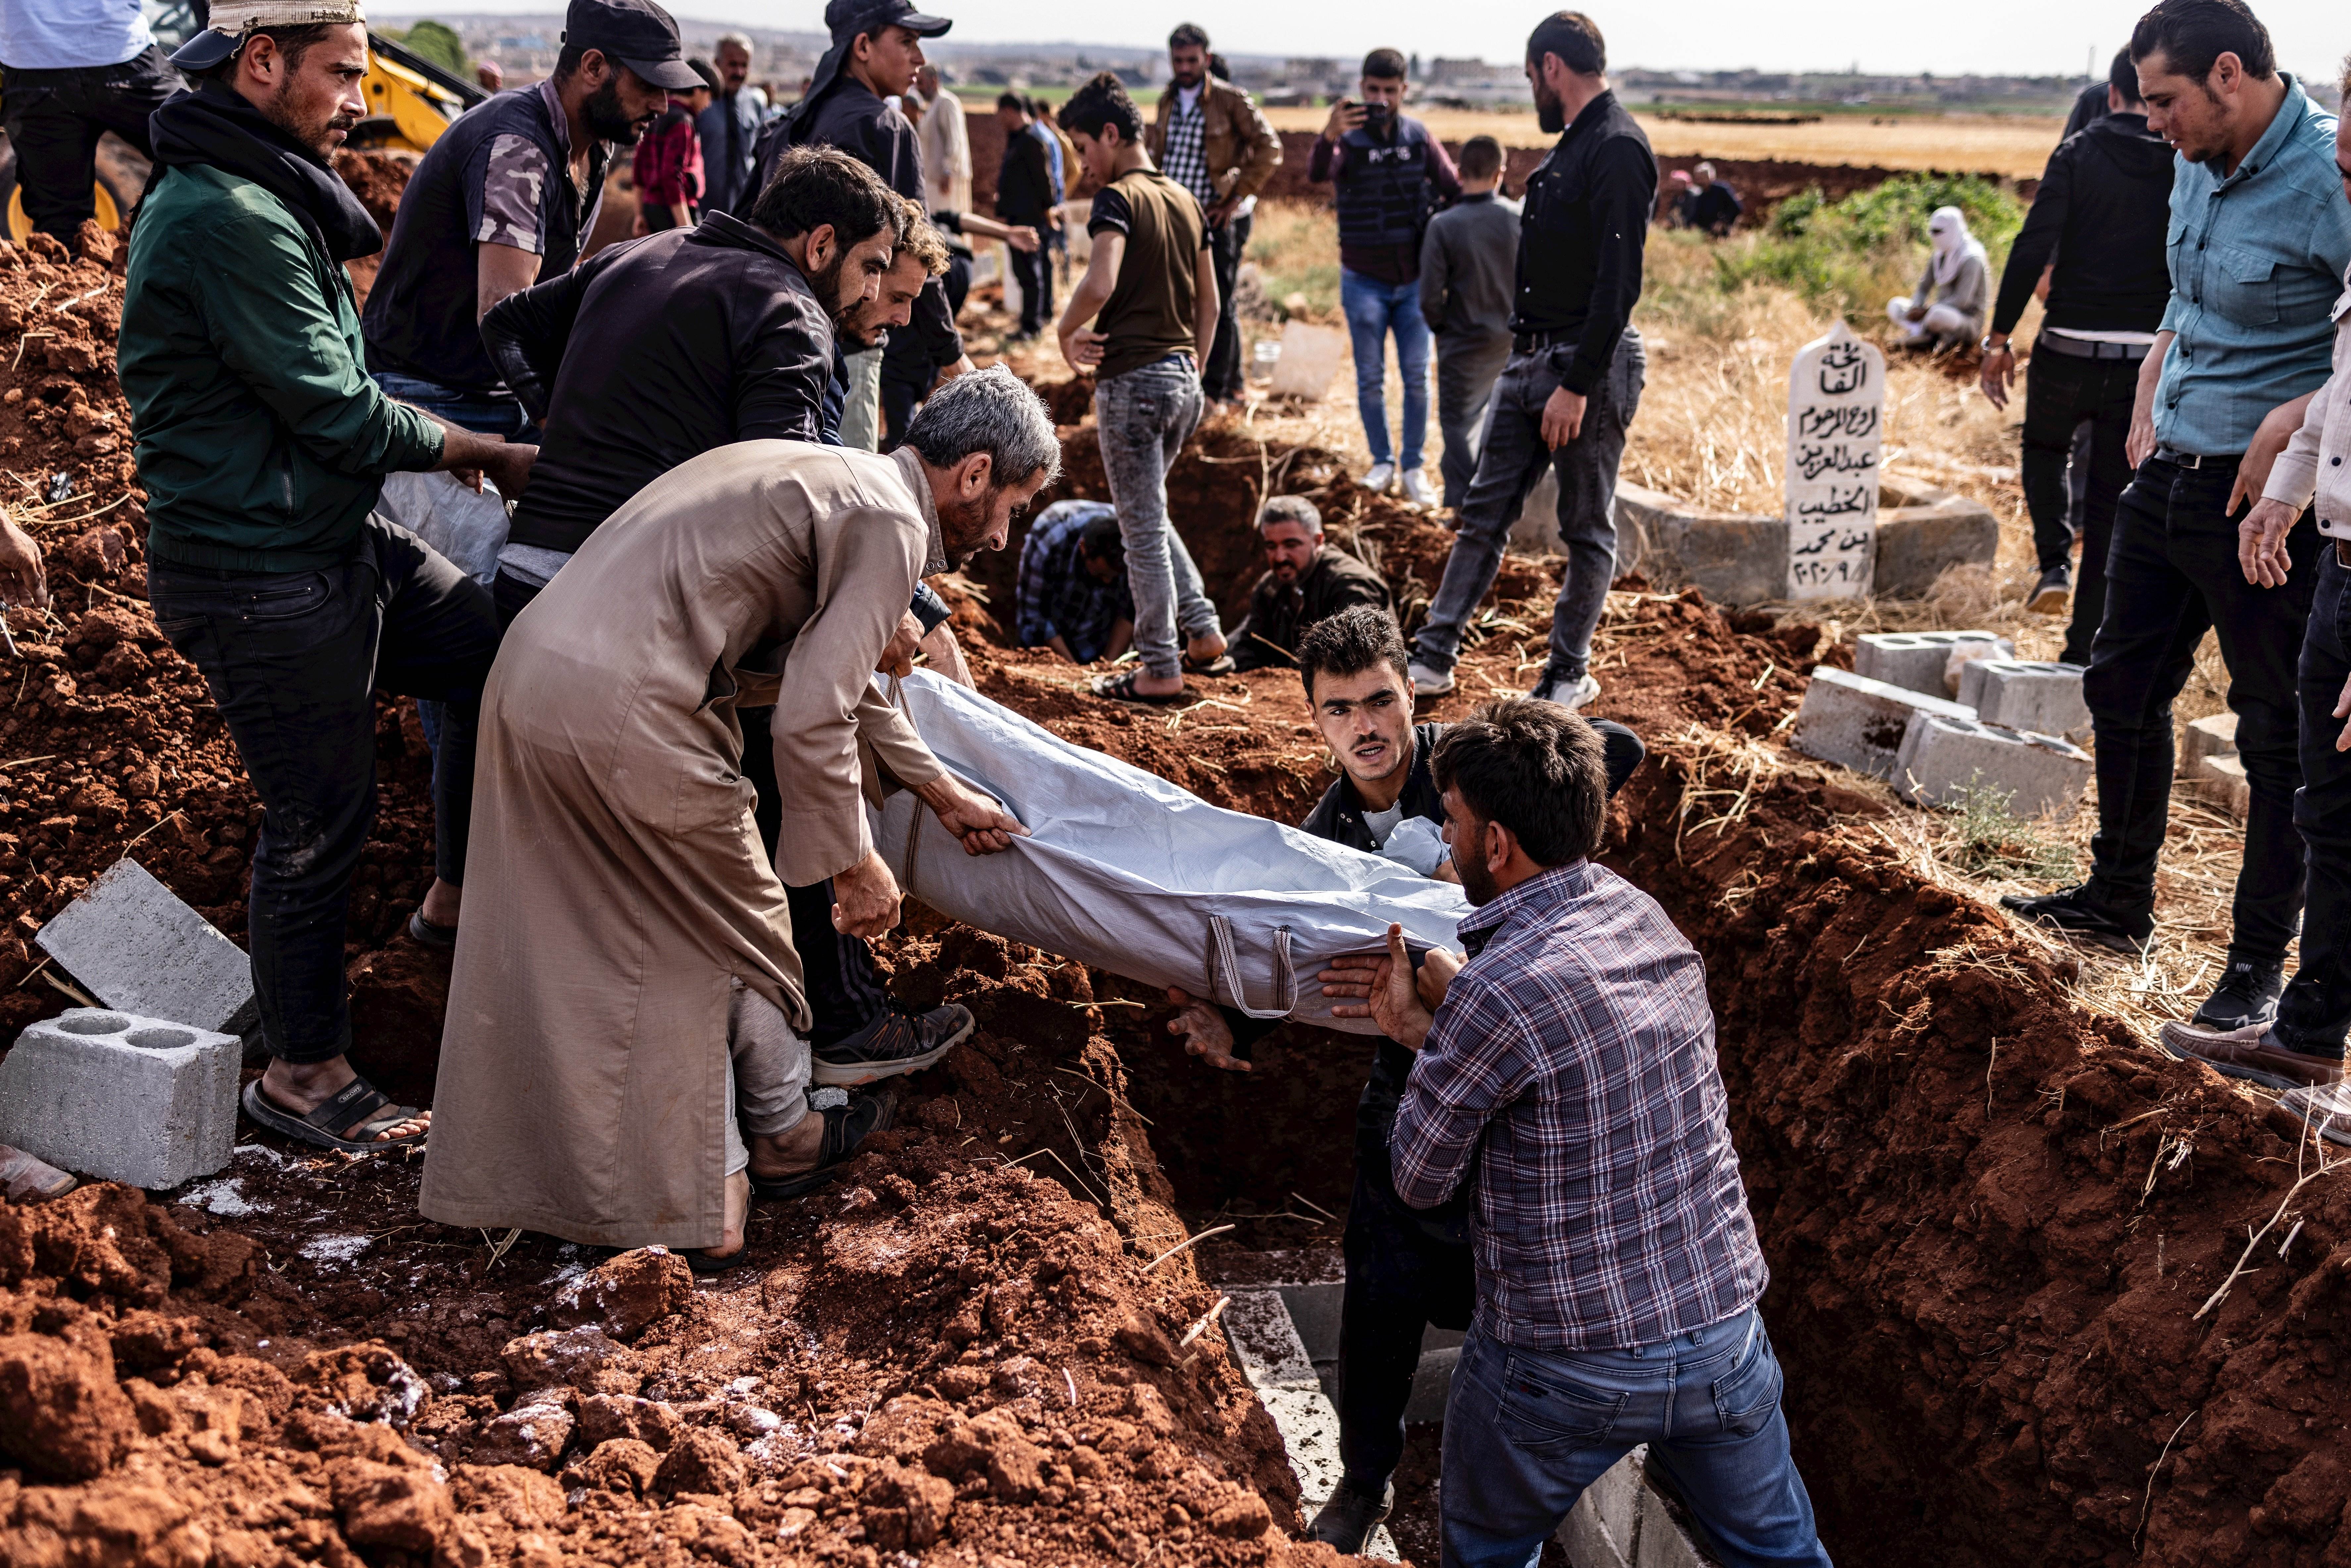 Un atac contra una acadèmia militar a Síria mata més de 60 persones